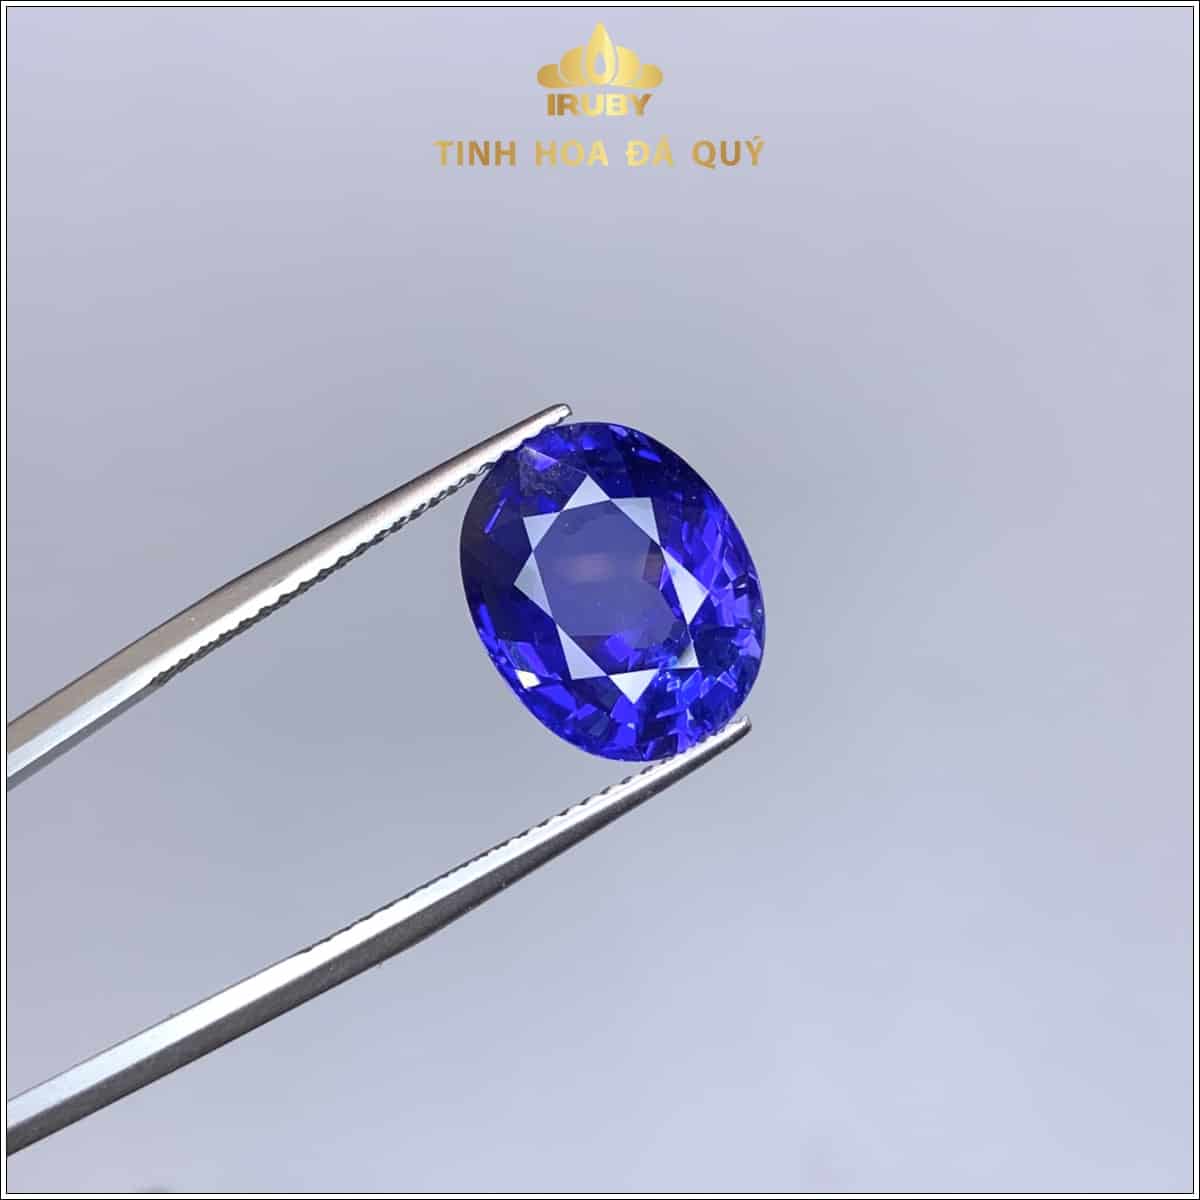 Viên Sapphire màu xanh lam hoàng gia 7,05ct - IRSP 236705 hình ảnh 1